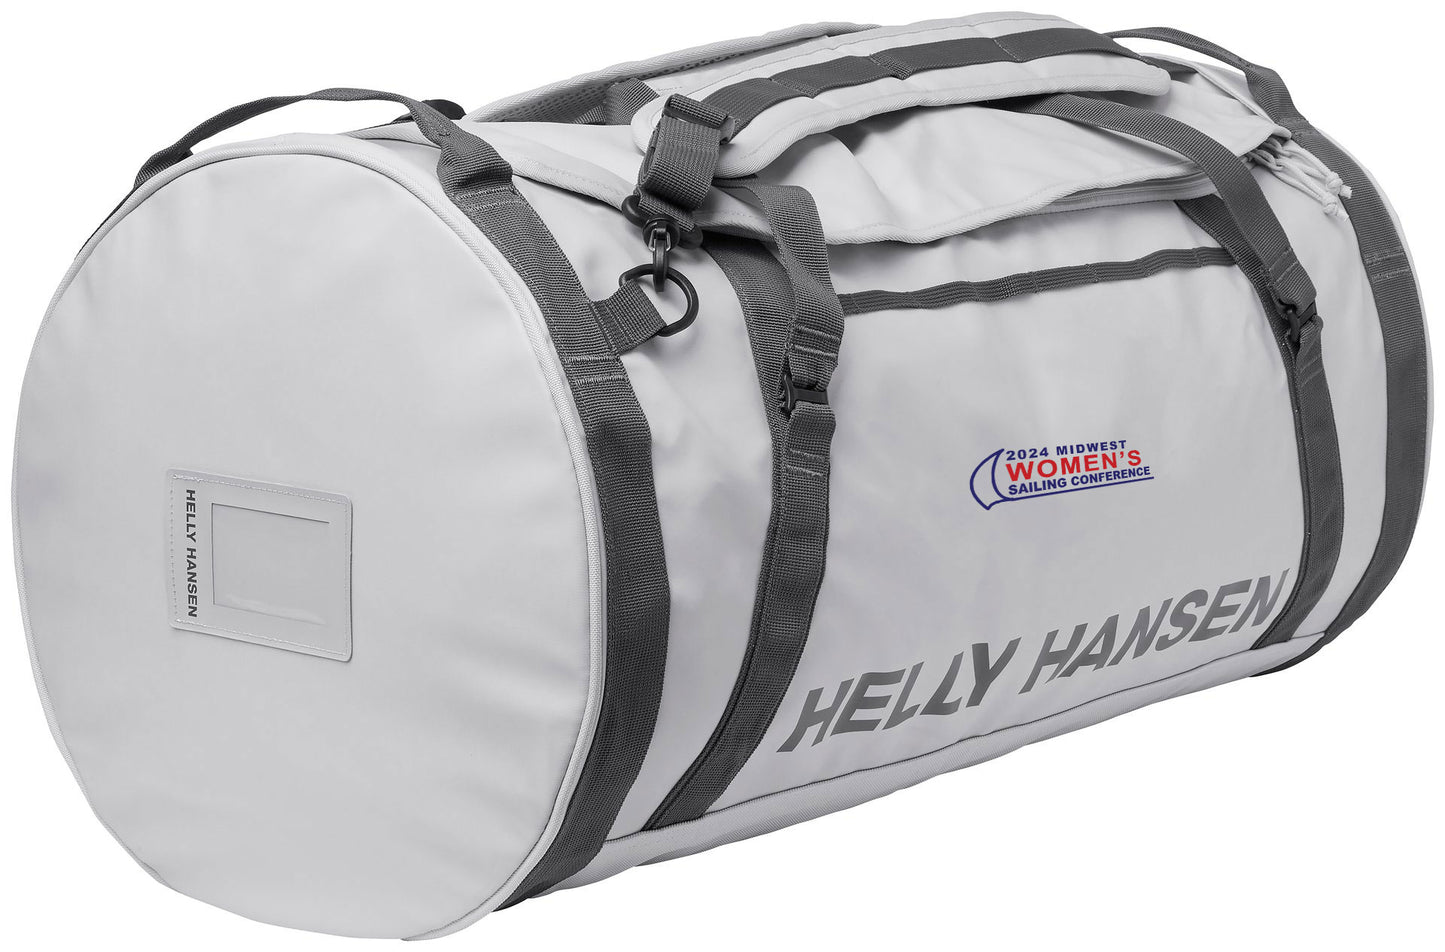 Helly Hansen MWSC Duffel Bag 2 70L